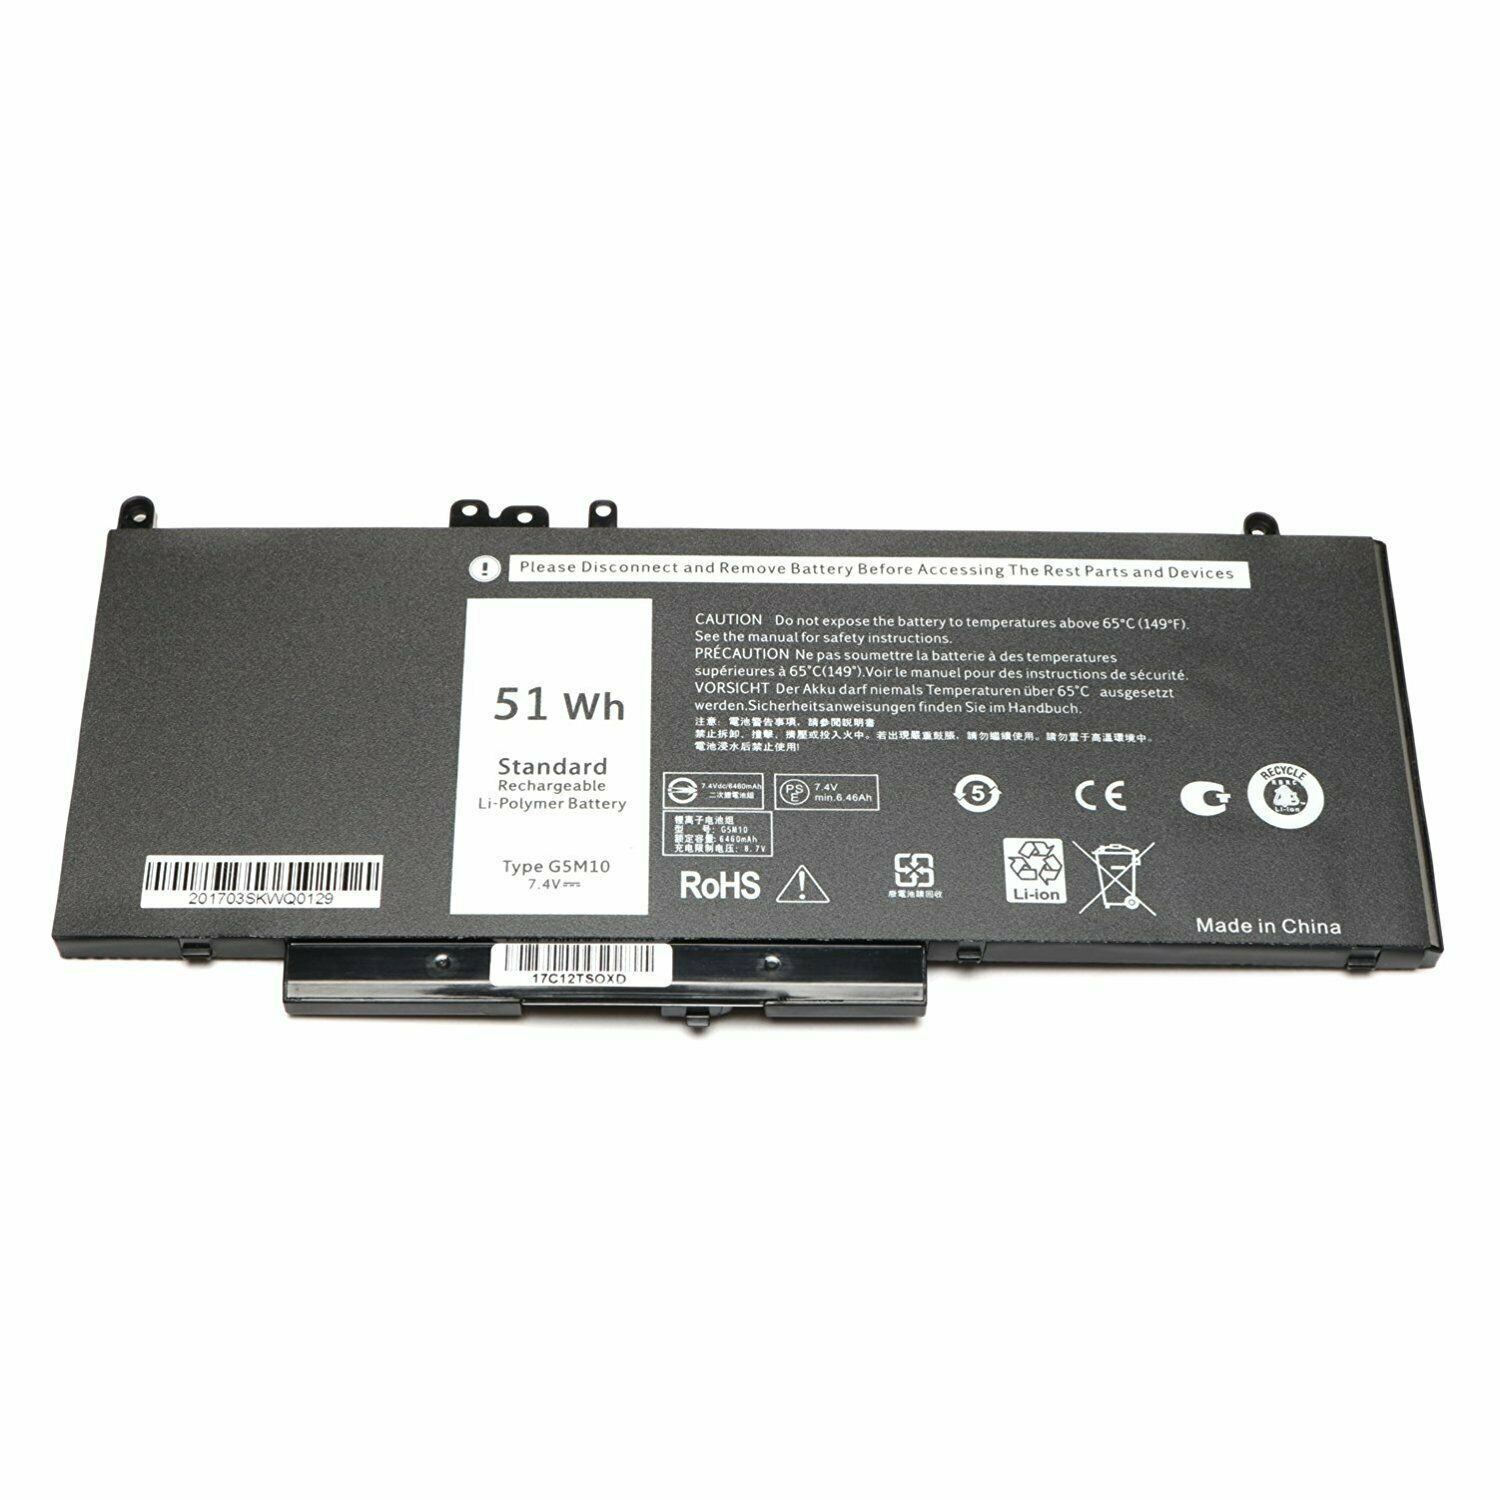 51Wh G5M10 Dell Latitude E5250 E5270 E5450 E5550 WYJC2 8V5GX F5WW5 kompatibelt batterier - Trykk på bildet for å lukke